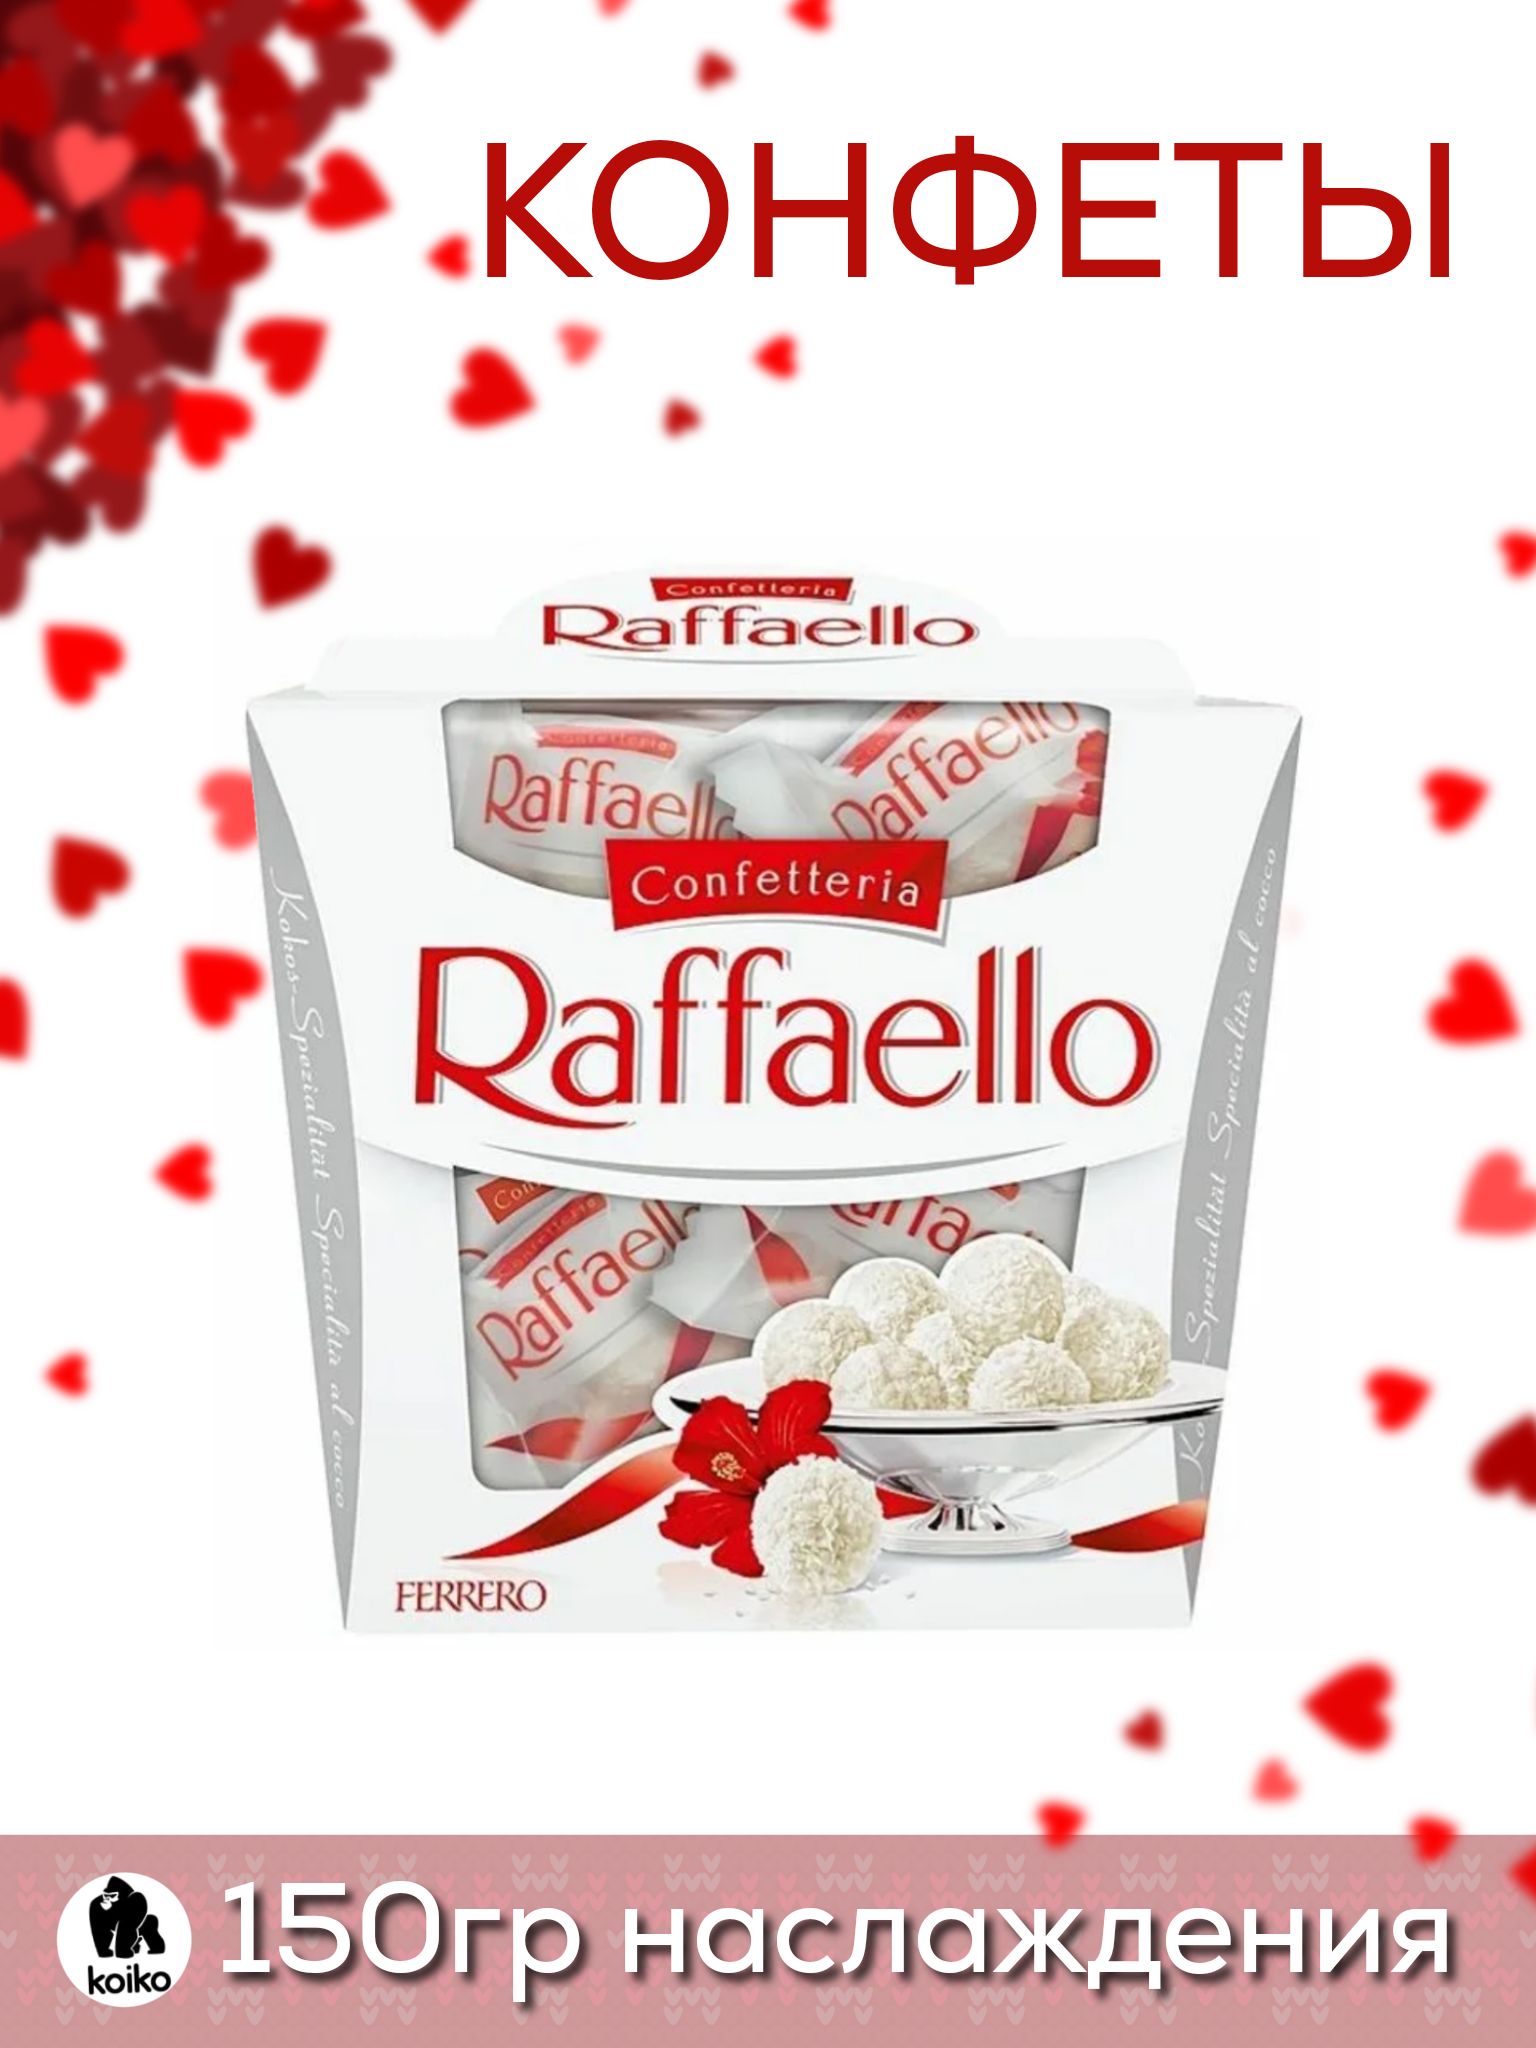 Сколько штук в рафаэлло 150. Конфеты Raffaello 150г. Набор конфет Ferrero Raffaello 150г. Рафаэлло конфеты ккал. Сколько штук в коробке Рафаэлло 150 г.